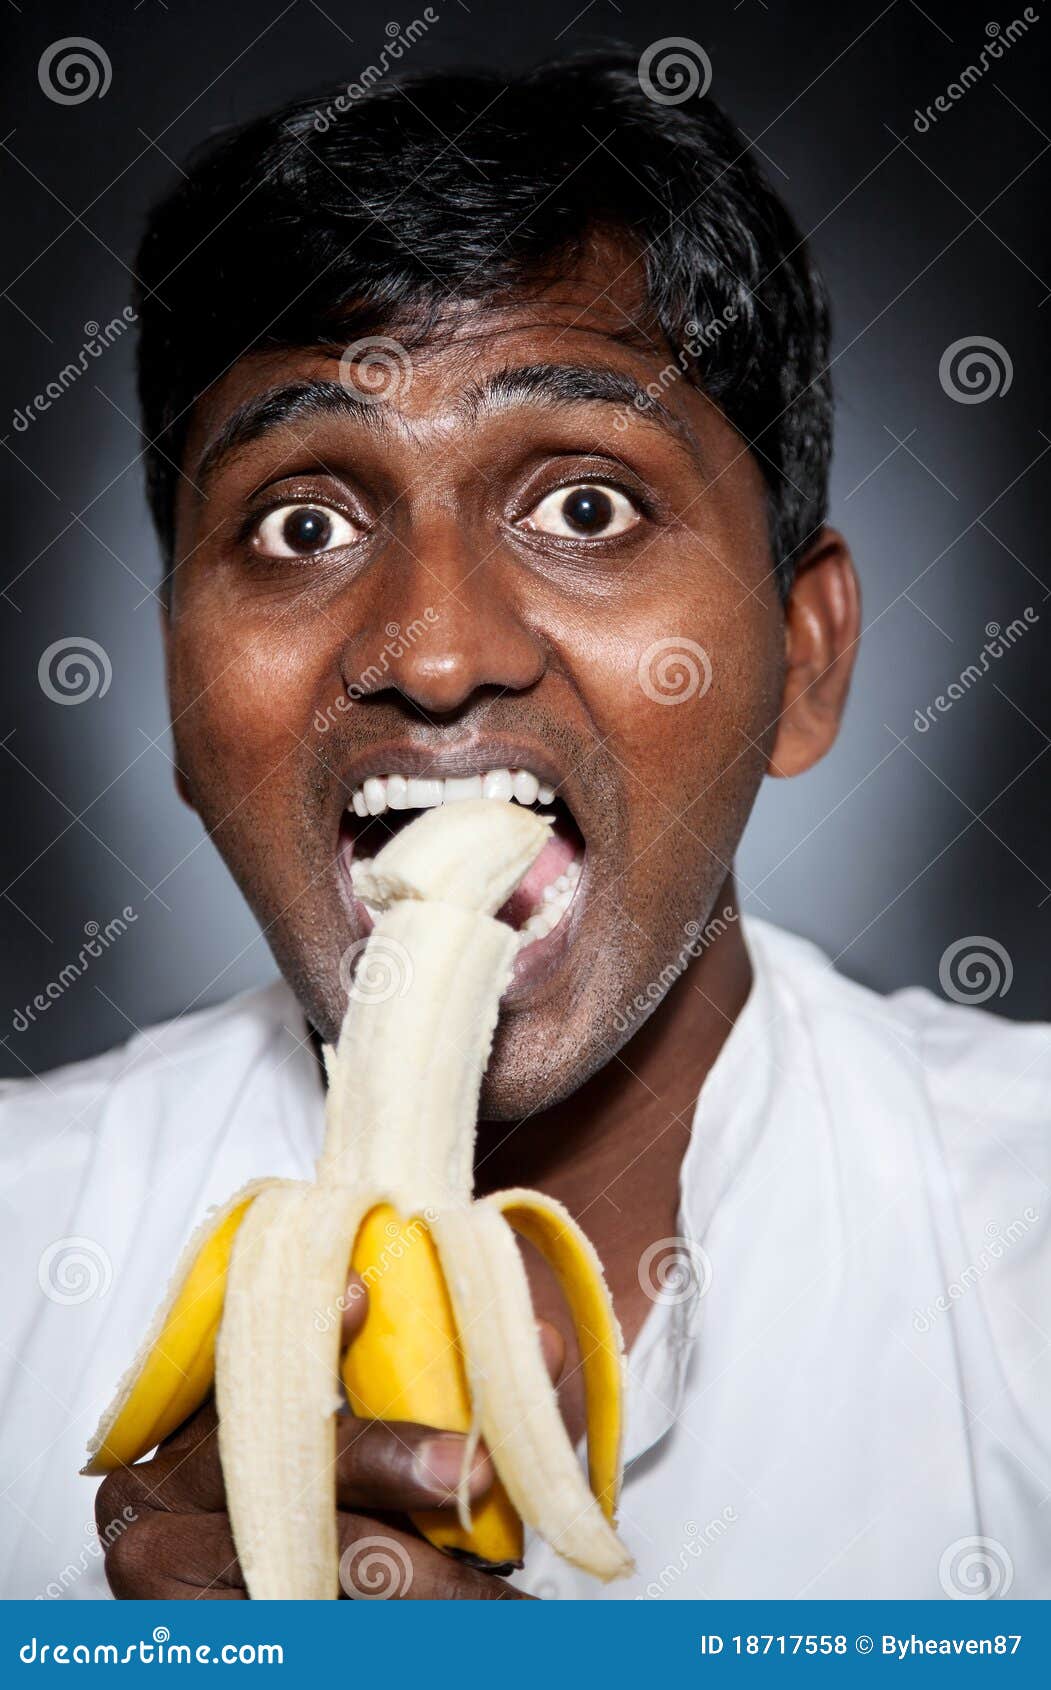 indian-man-eating-banana-18717558.jpg